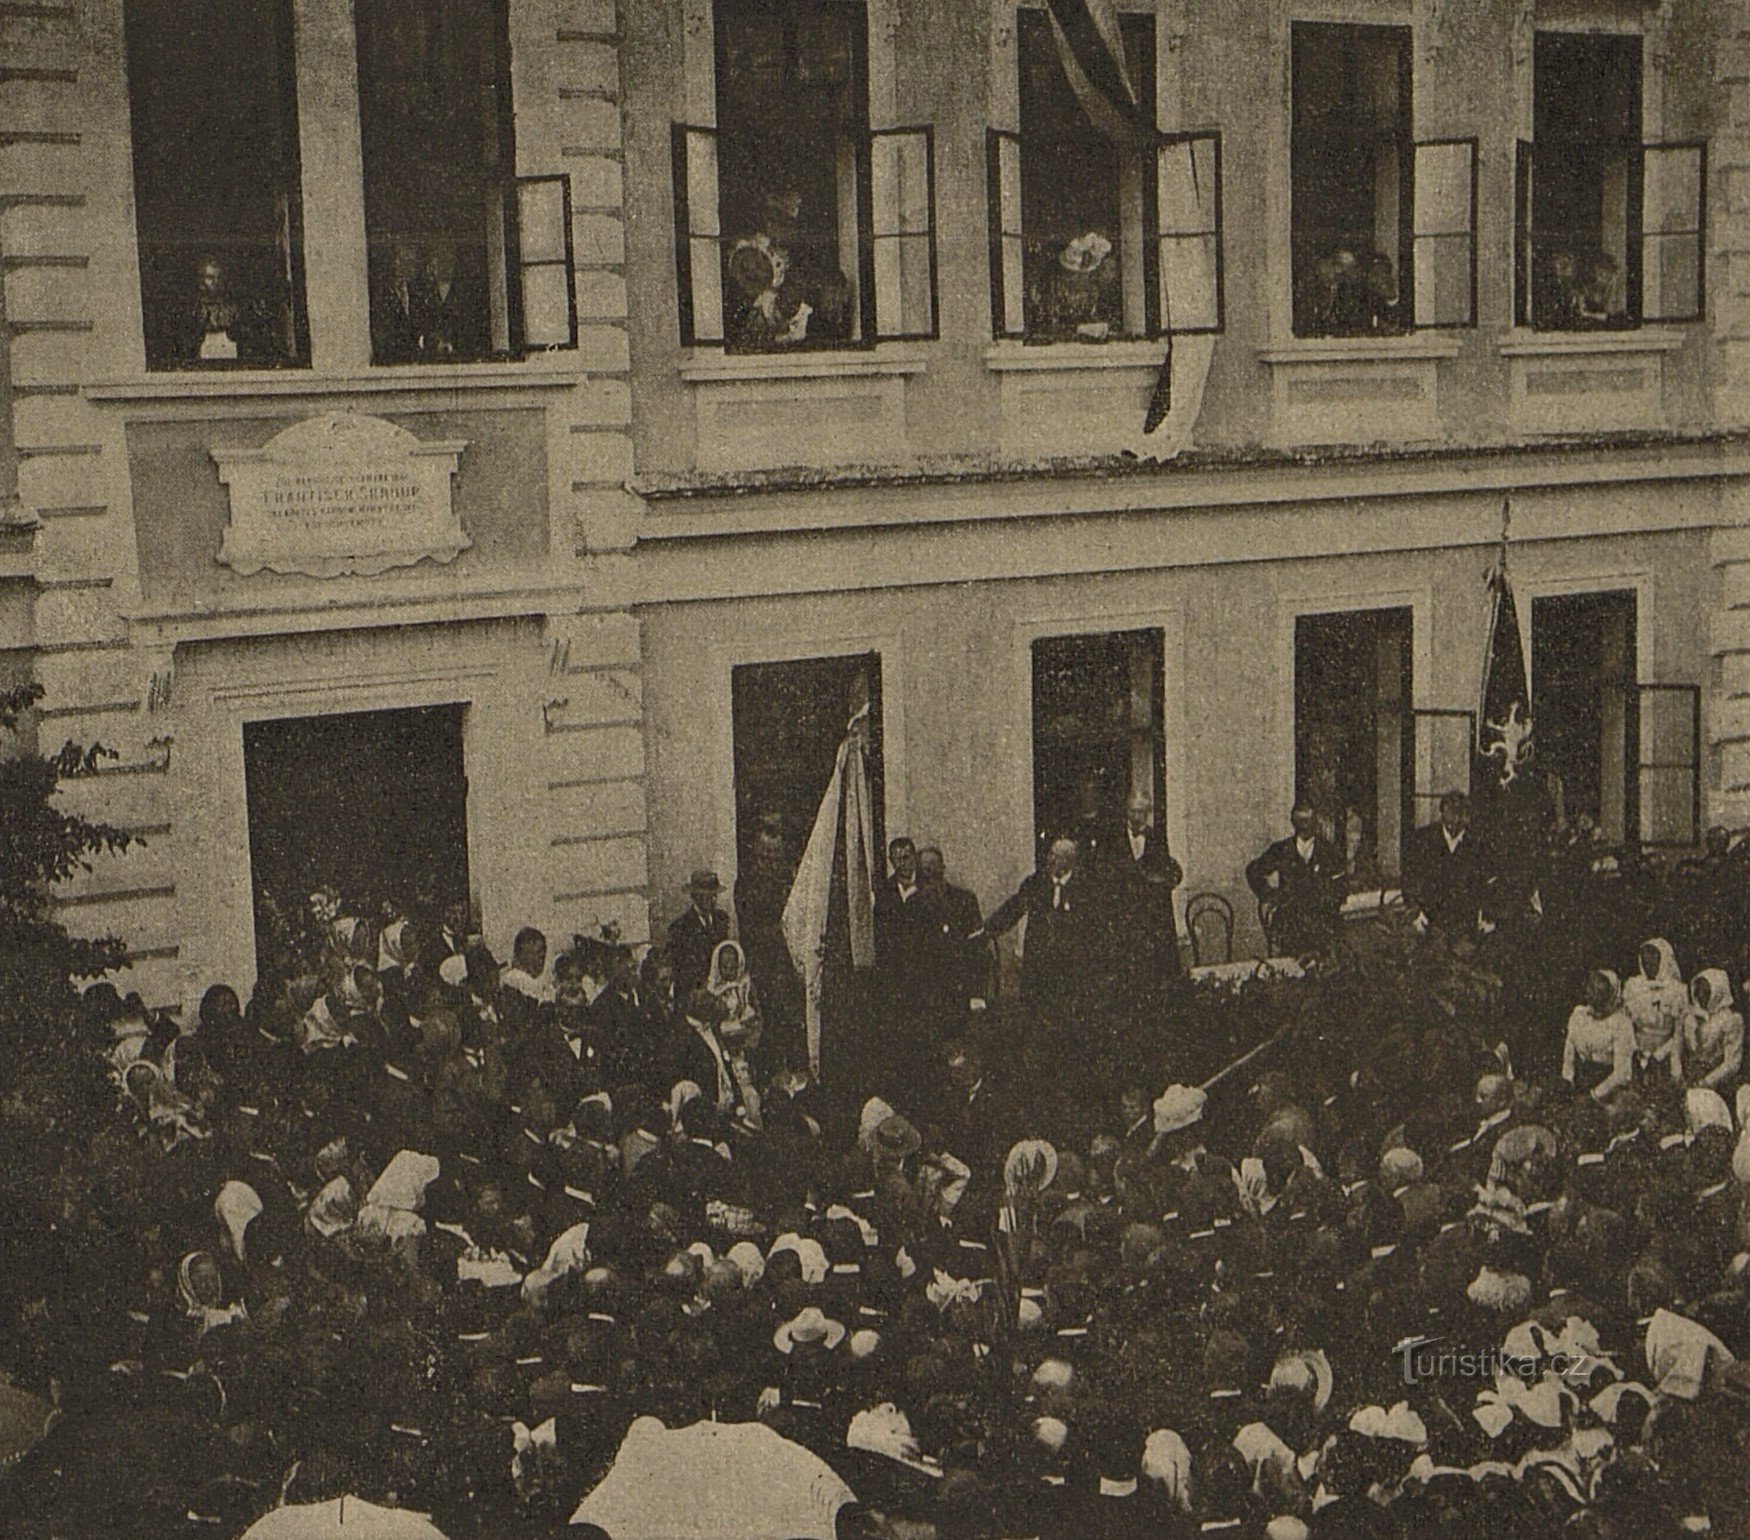 Dezvelirea ceremonială a plăcii memoriale lui František Škroup la Osice în 1901